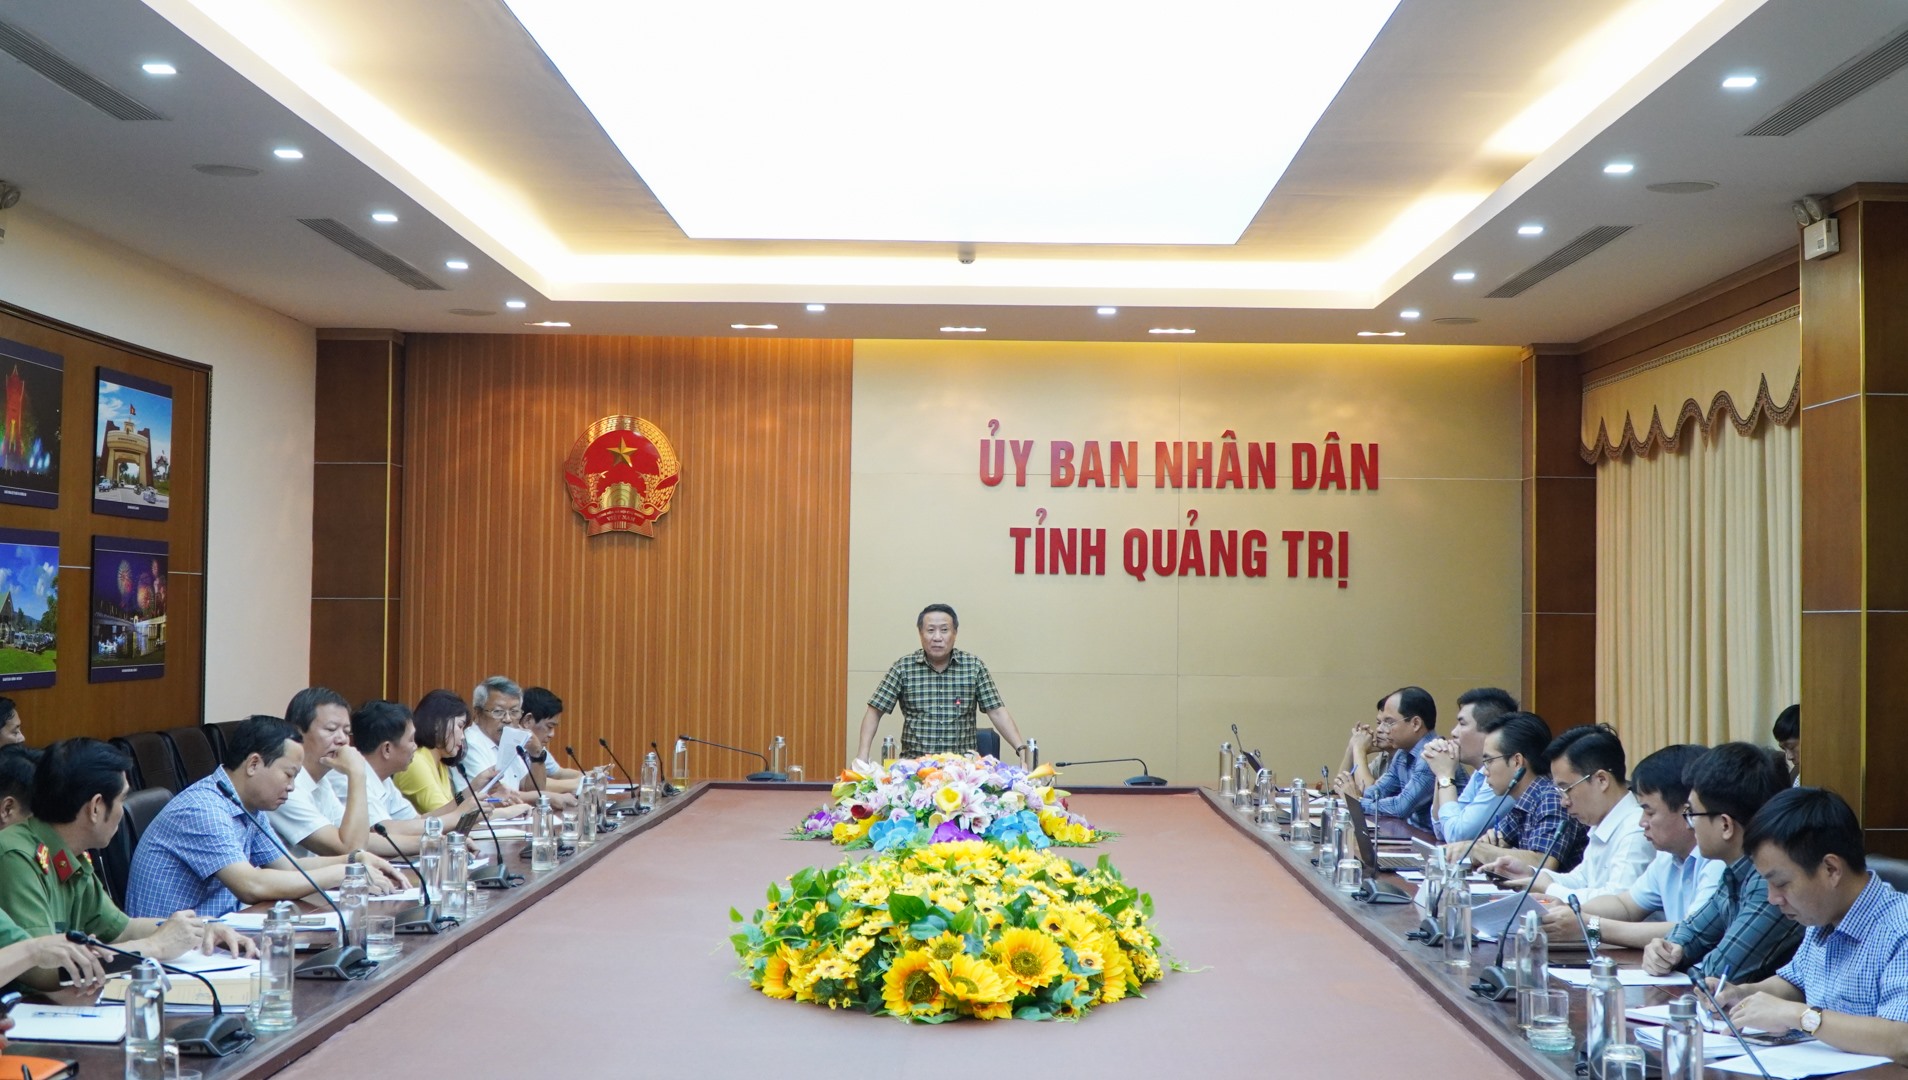 Phó Chủ tịch Thường trực UBND tỉnh Hà Sỹ Đồng chia sẻ với nhà đầu tư về những khó khăn đang gặp phải - Ảnh: Lê Trường